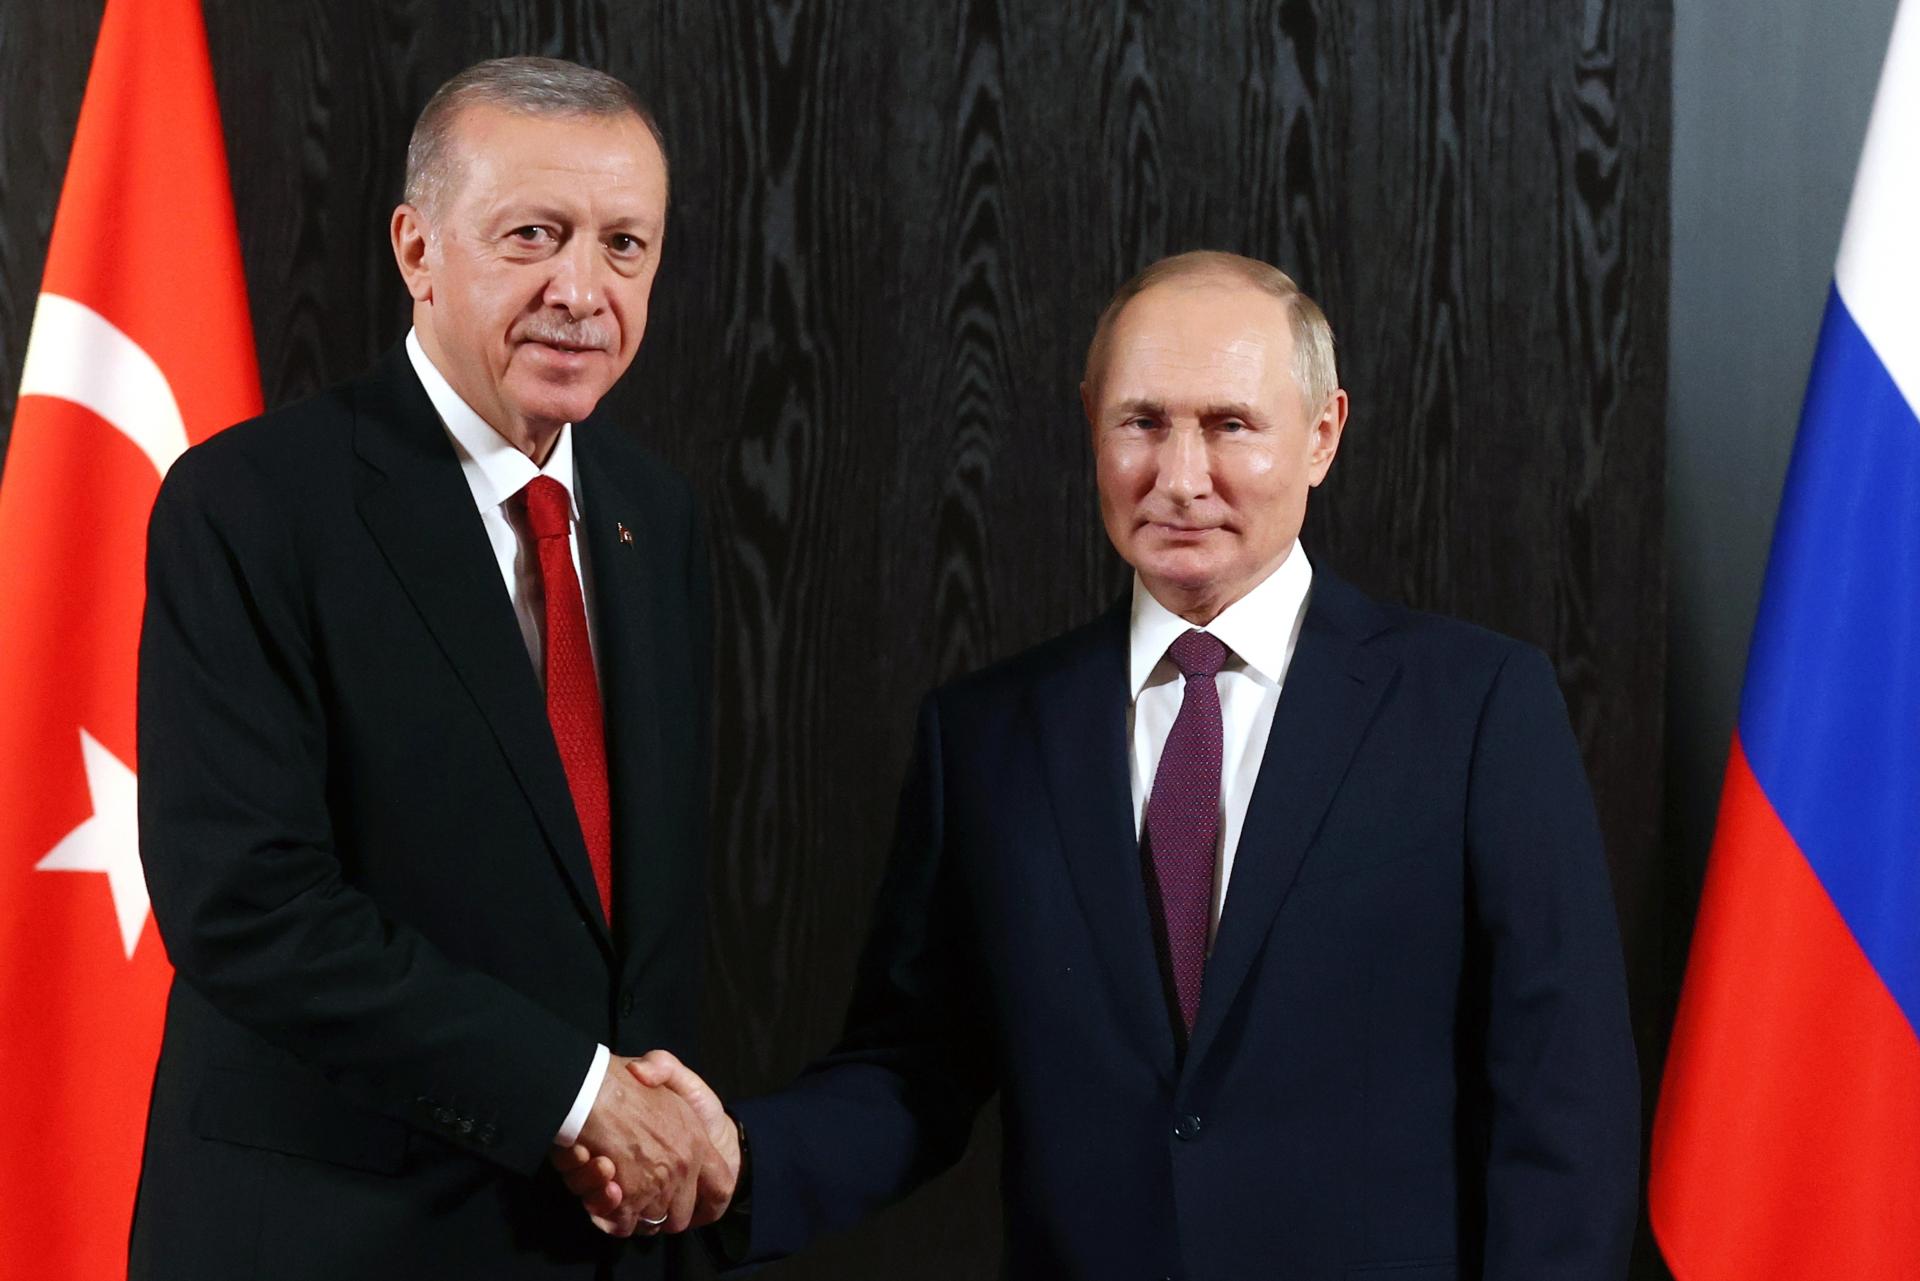 Ankara je pripravená sprostredkovať mier na Ukrajine, povedal Erdogan v rozhovore s Putinom